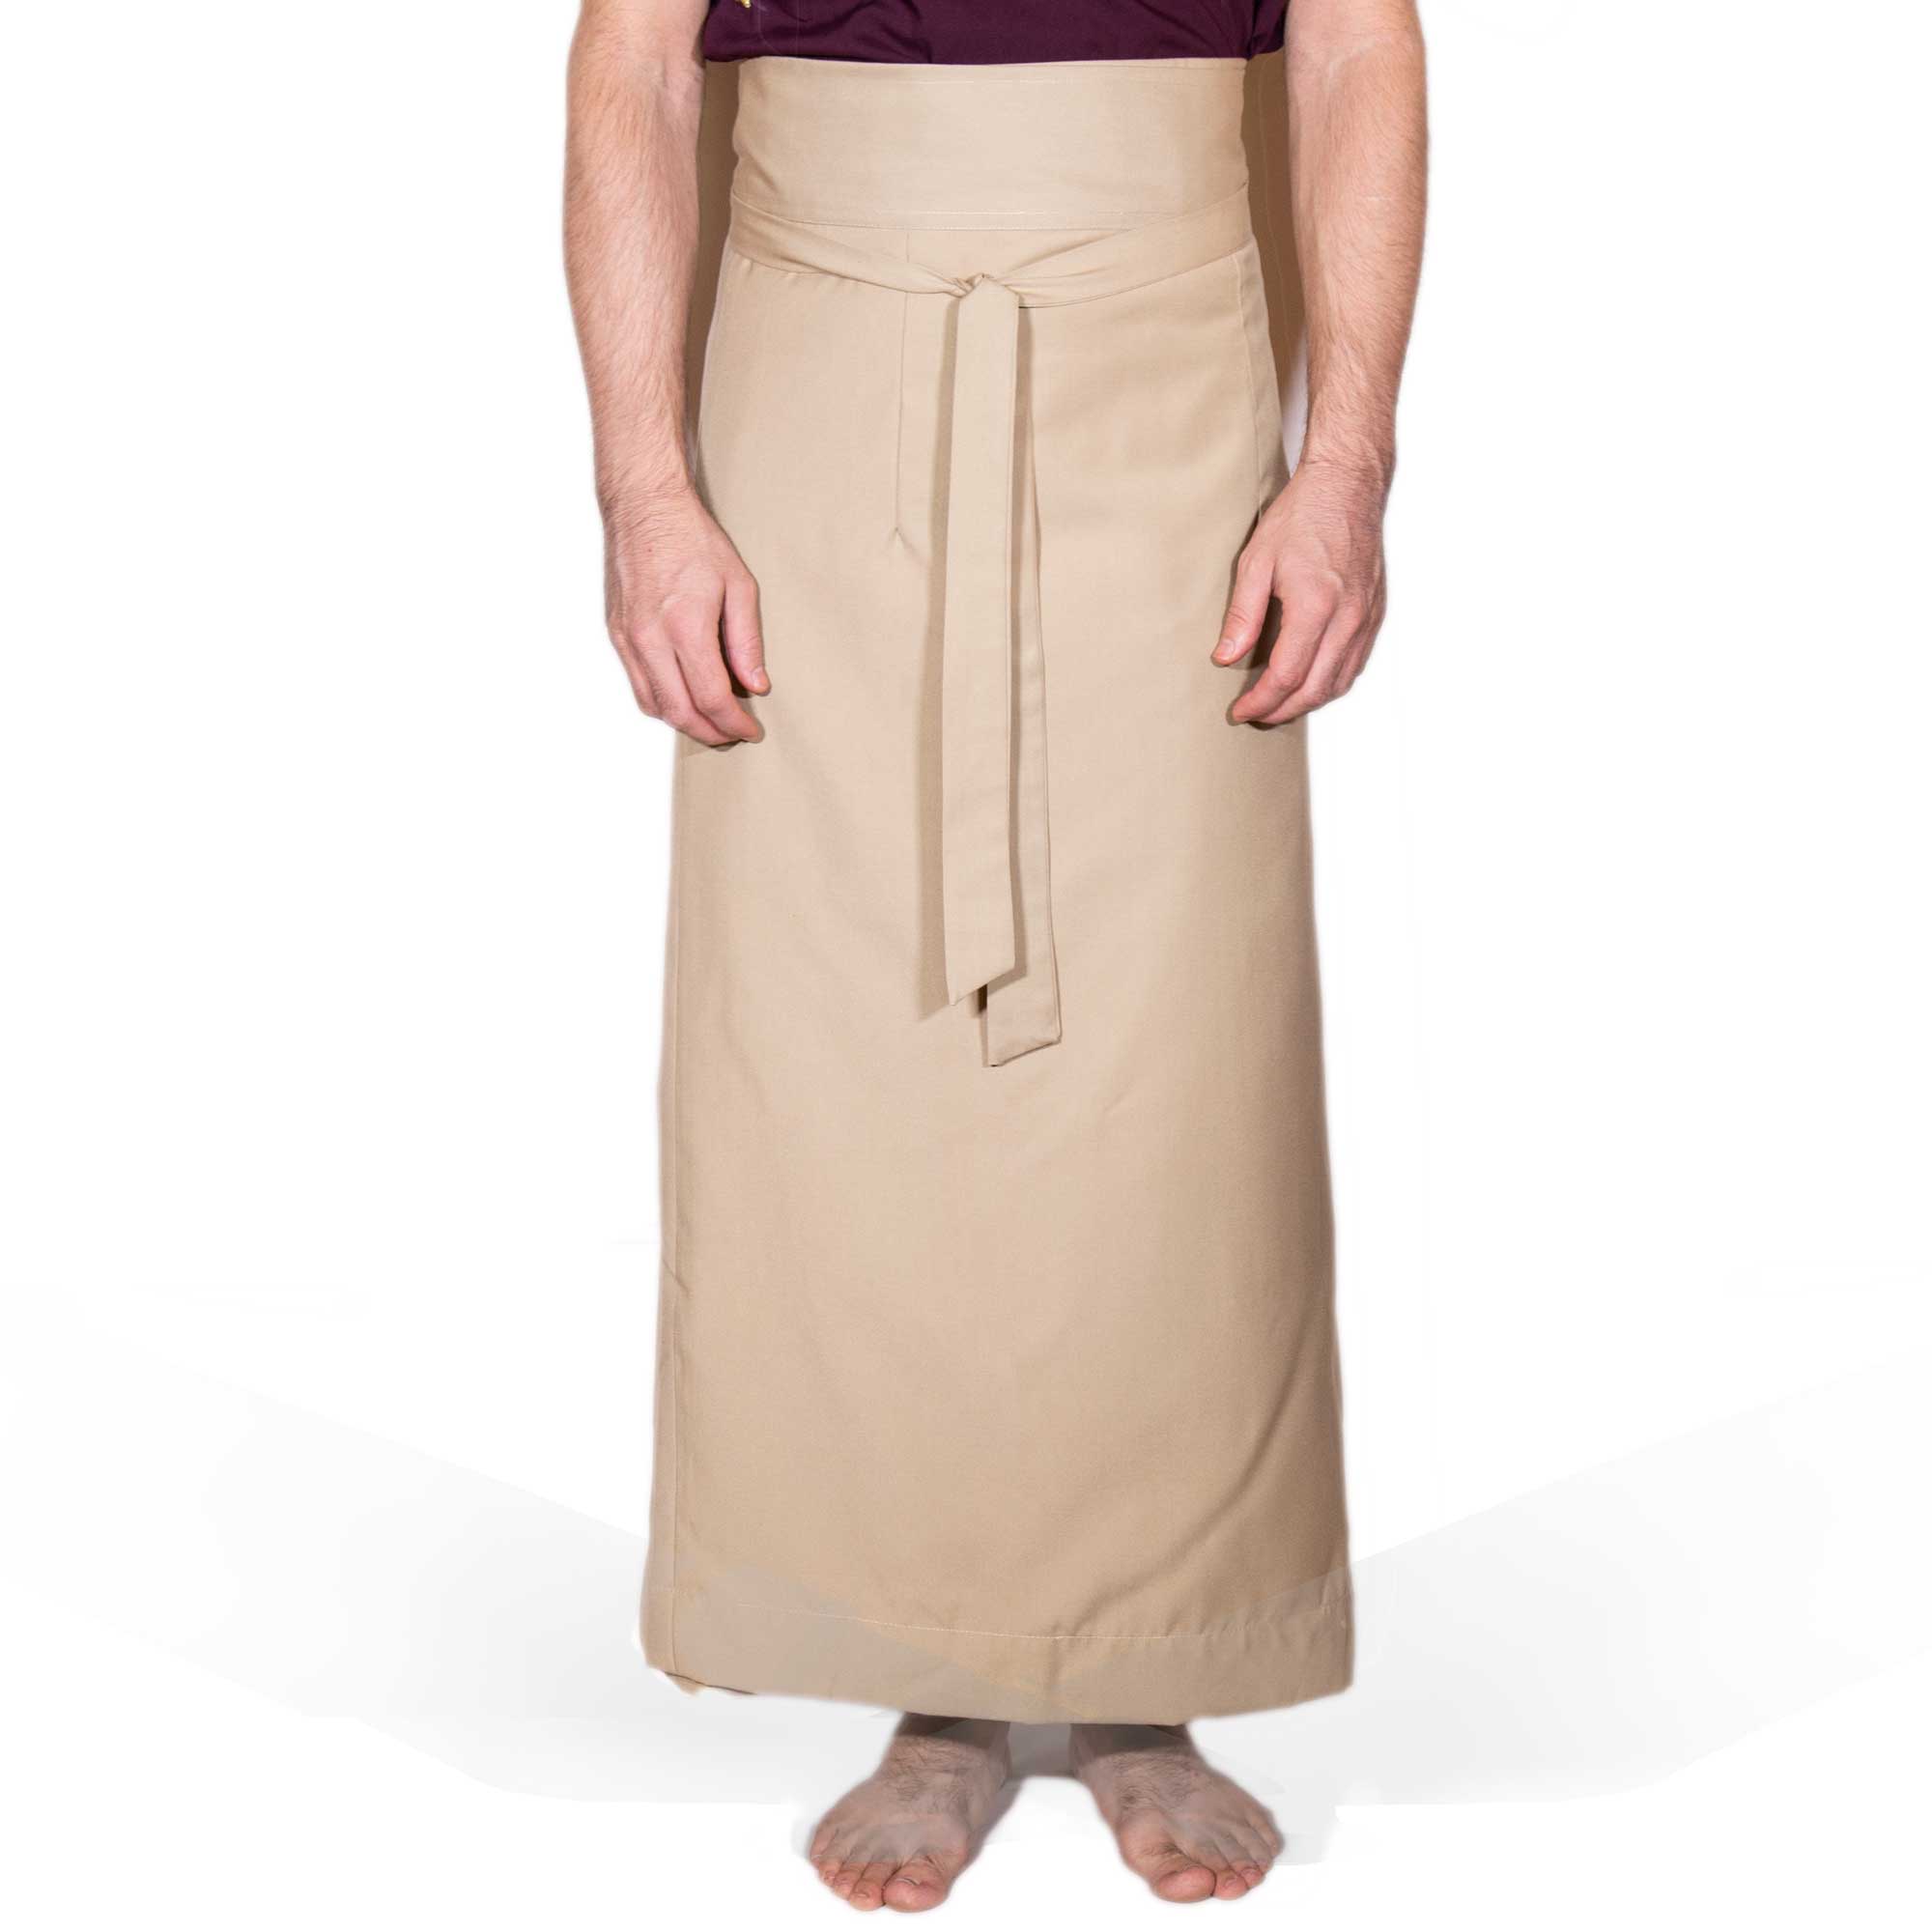 Wraparound Chuba Skirt - Khaki